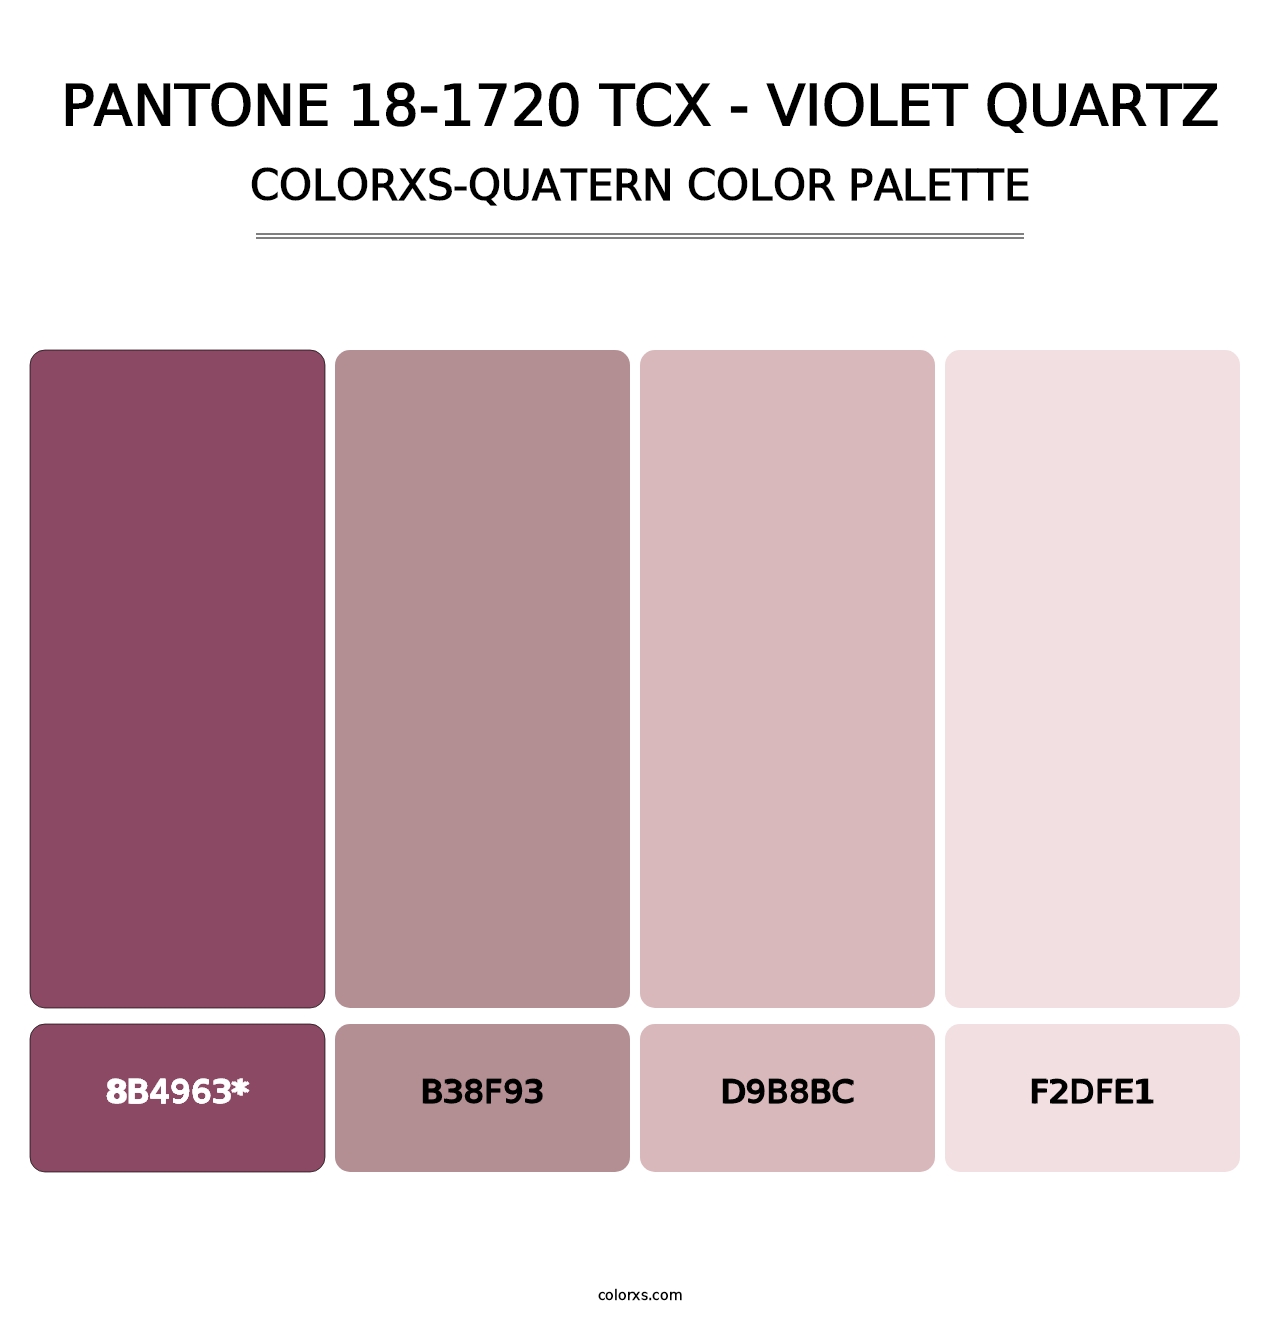 PANTONE 18-1720 TCX - Violet Quartz - Colorxs Quatern Palette